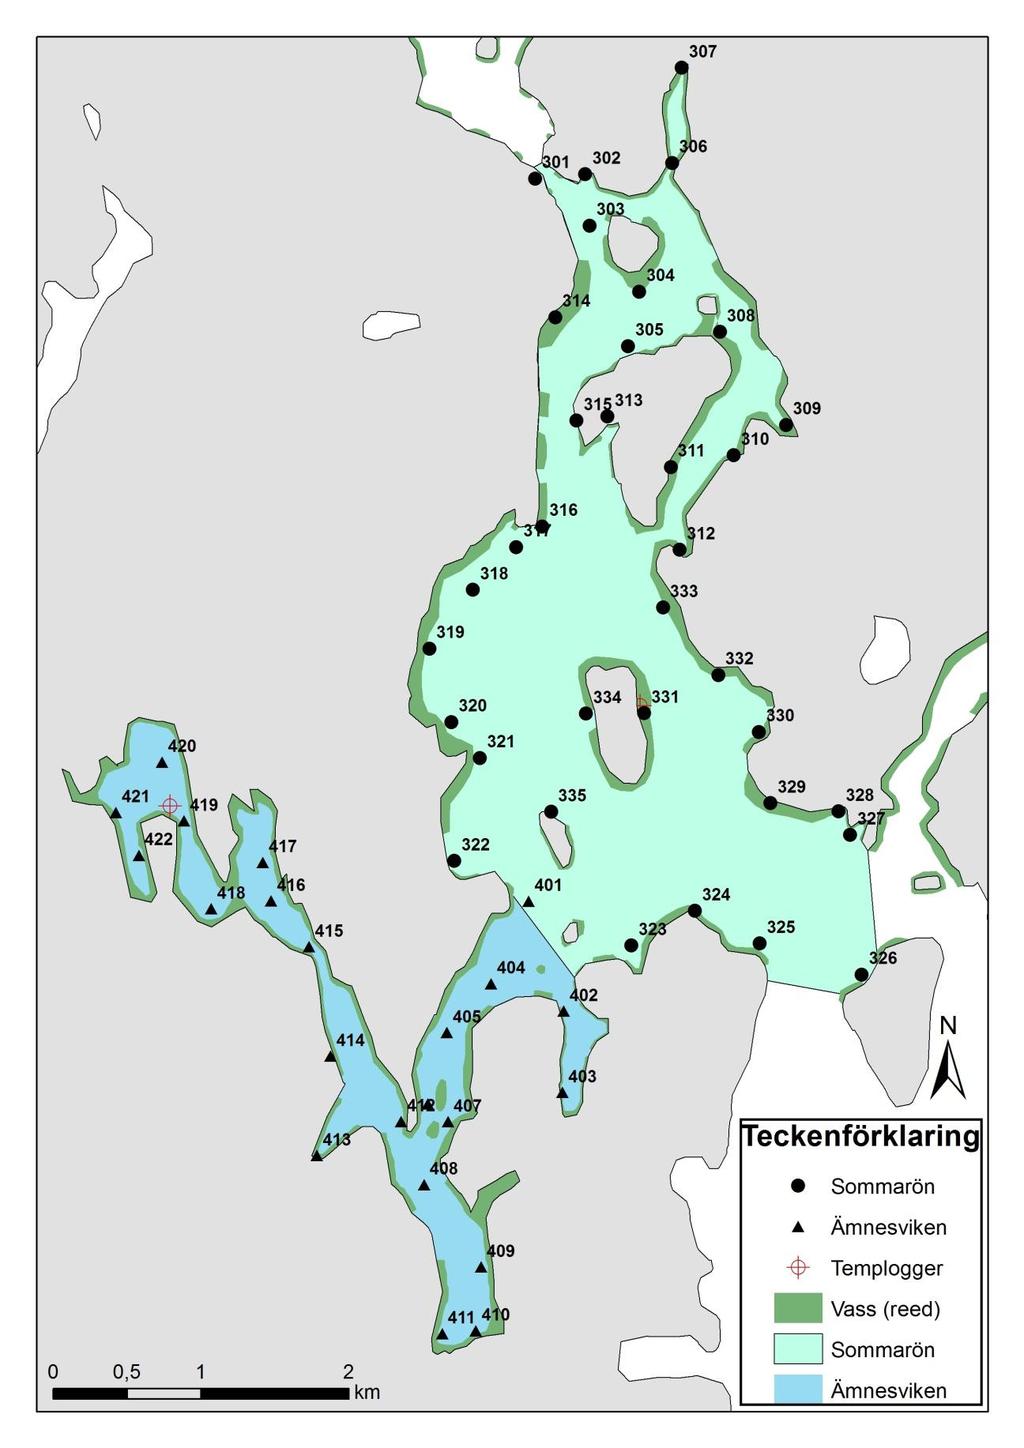 6 Figur 3. Provtagningspunkterna, vassutbredningen samt temploggernas placering runt Sommarön (301-335) och Ämnesviken (401-422). Det färglagda områden anger provtagningsområdets gränser.